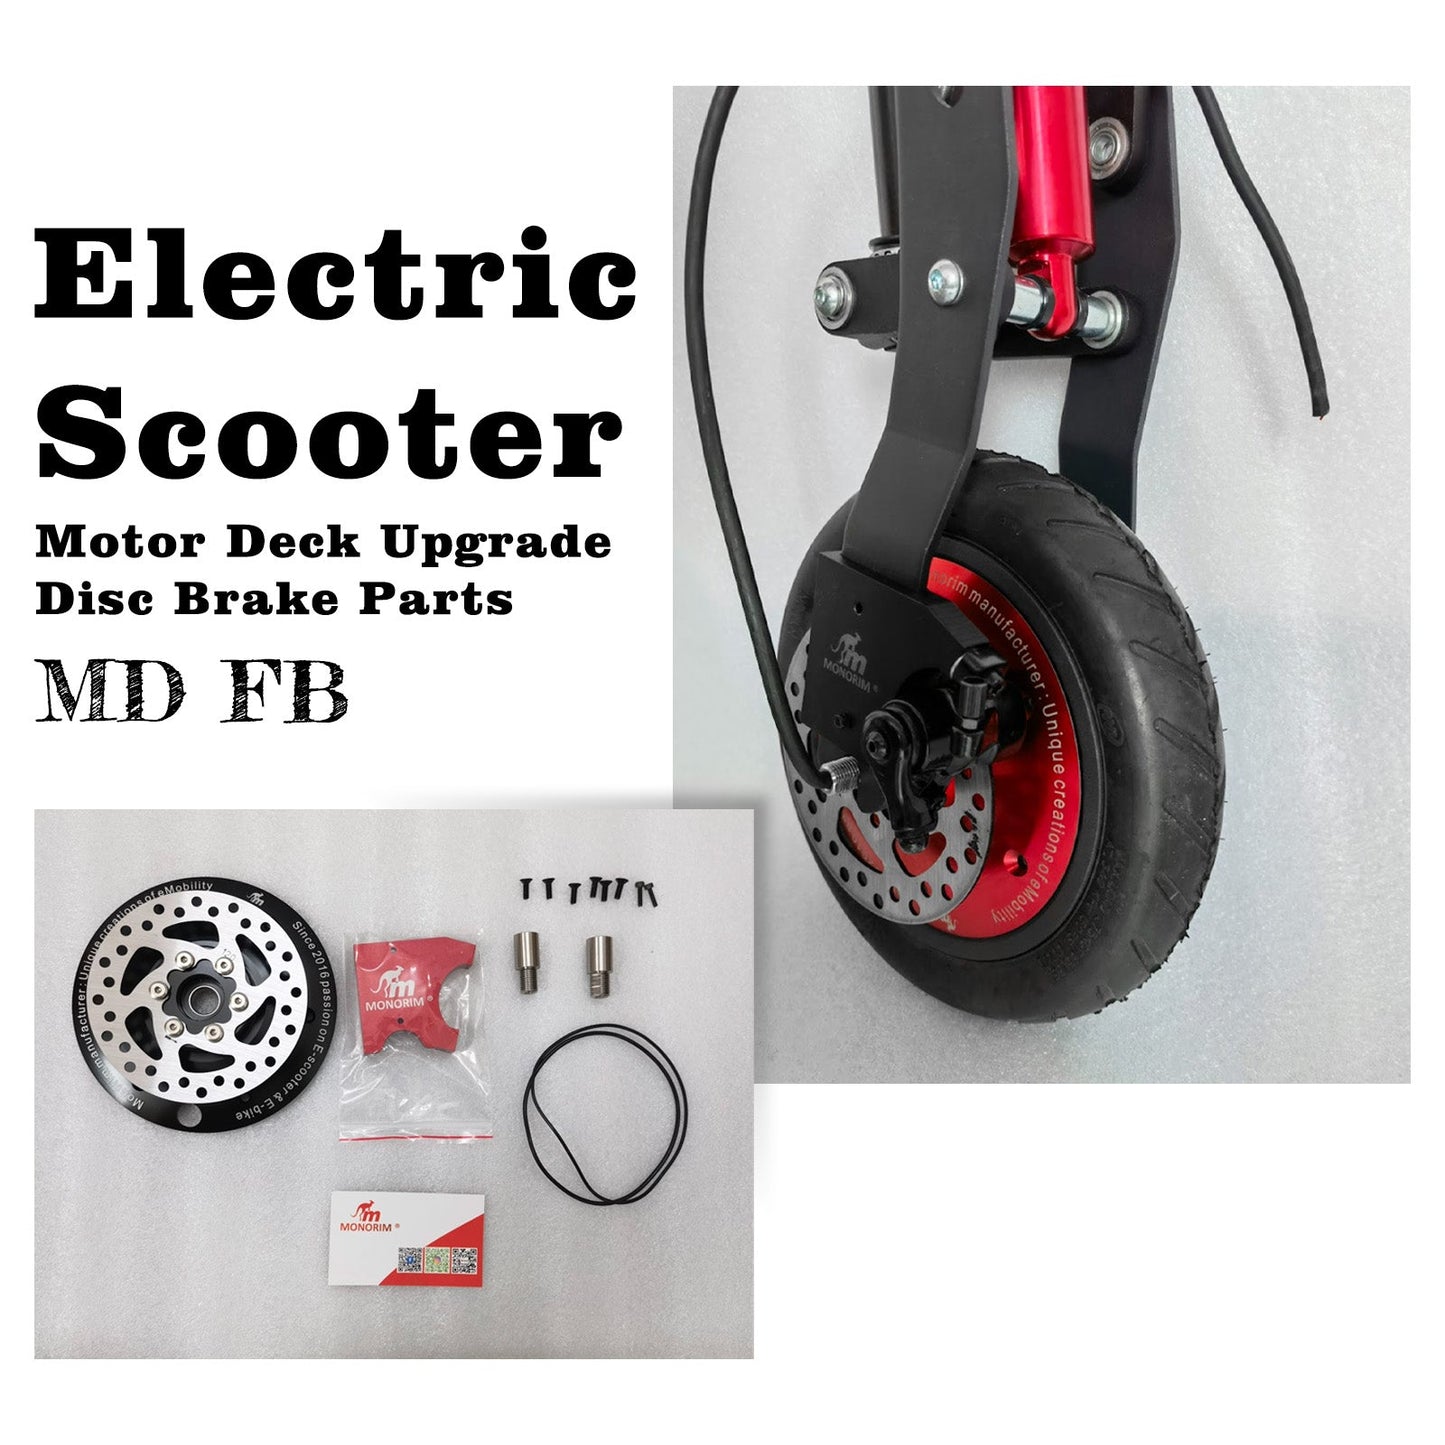 Monorim MD FB Motor Deck Upgrade Disc Brake Parts for Hiboy ks4 pro Scooter, 120/140mm Disc for Front Motor